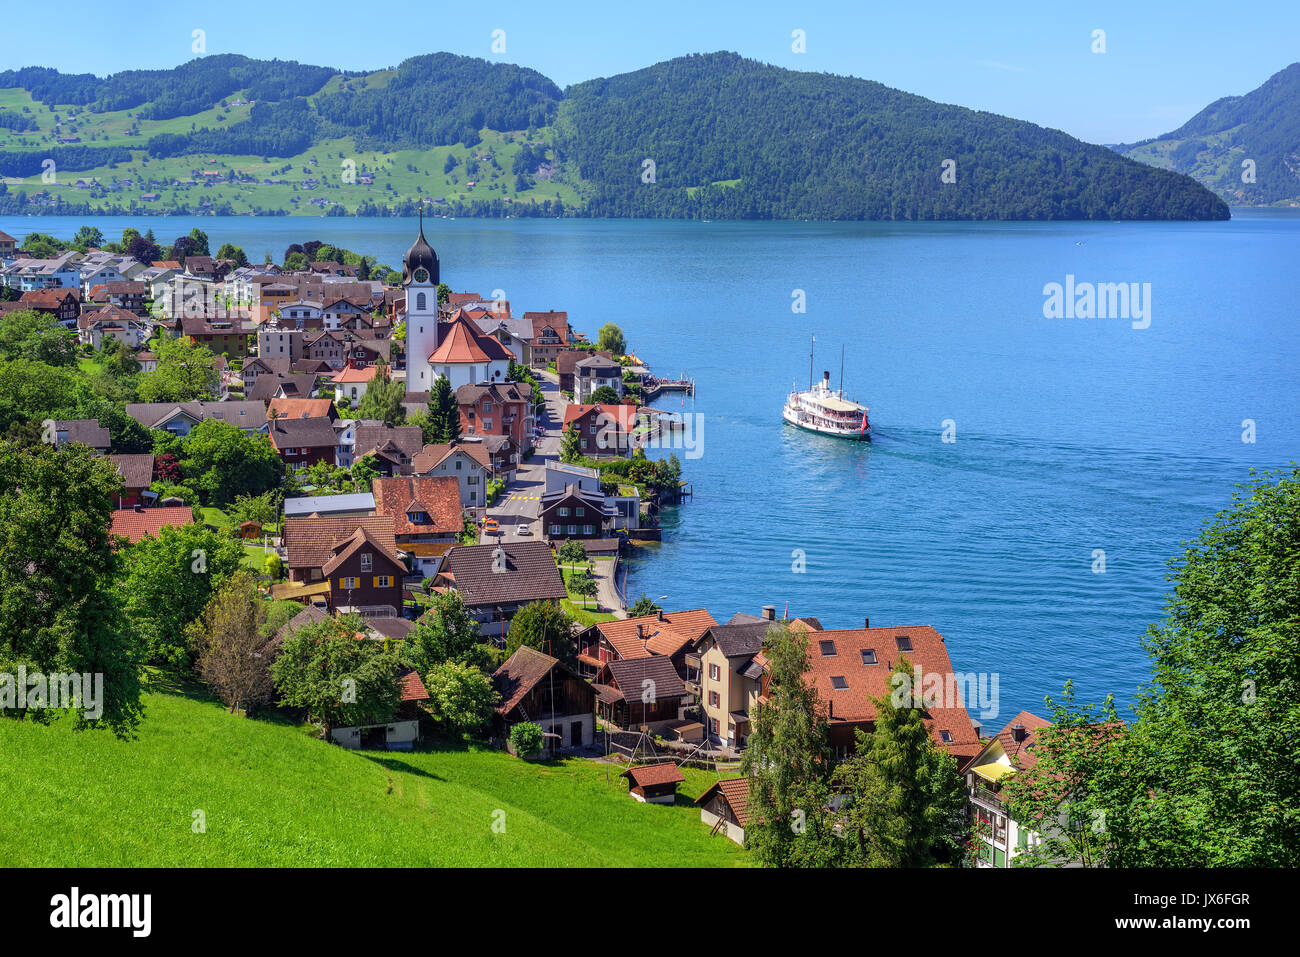 Kreuzfahrtschiff in der kleinen Stadt Beckenried am Vierwaldstättersee  anreisen, Schweizer Alpen, Schweiz Stockfotografie - Alamy